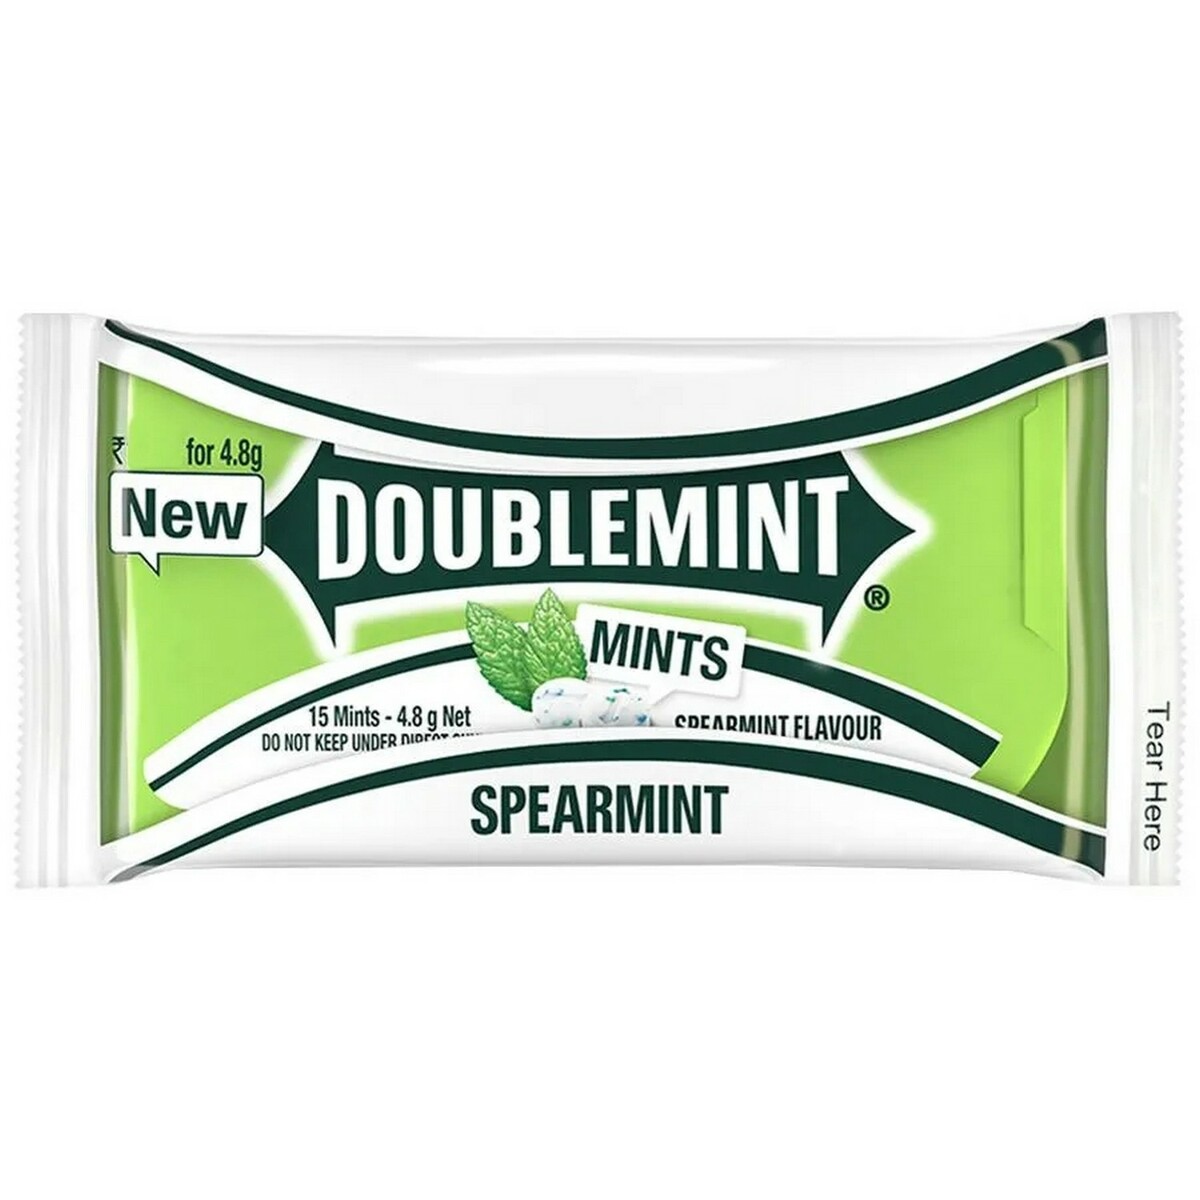 Wrigley's Doublemint Spearmint 4.8g